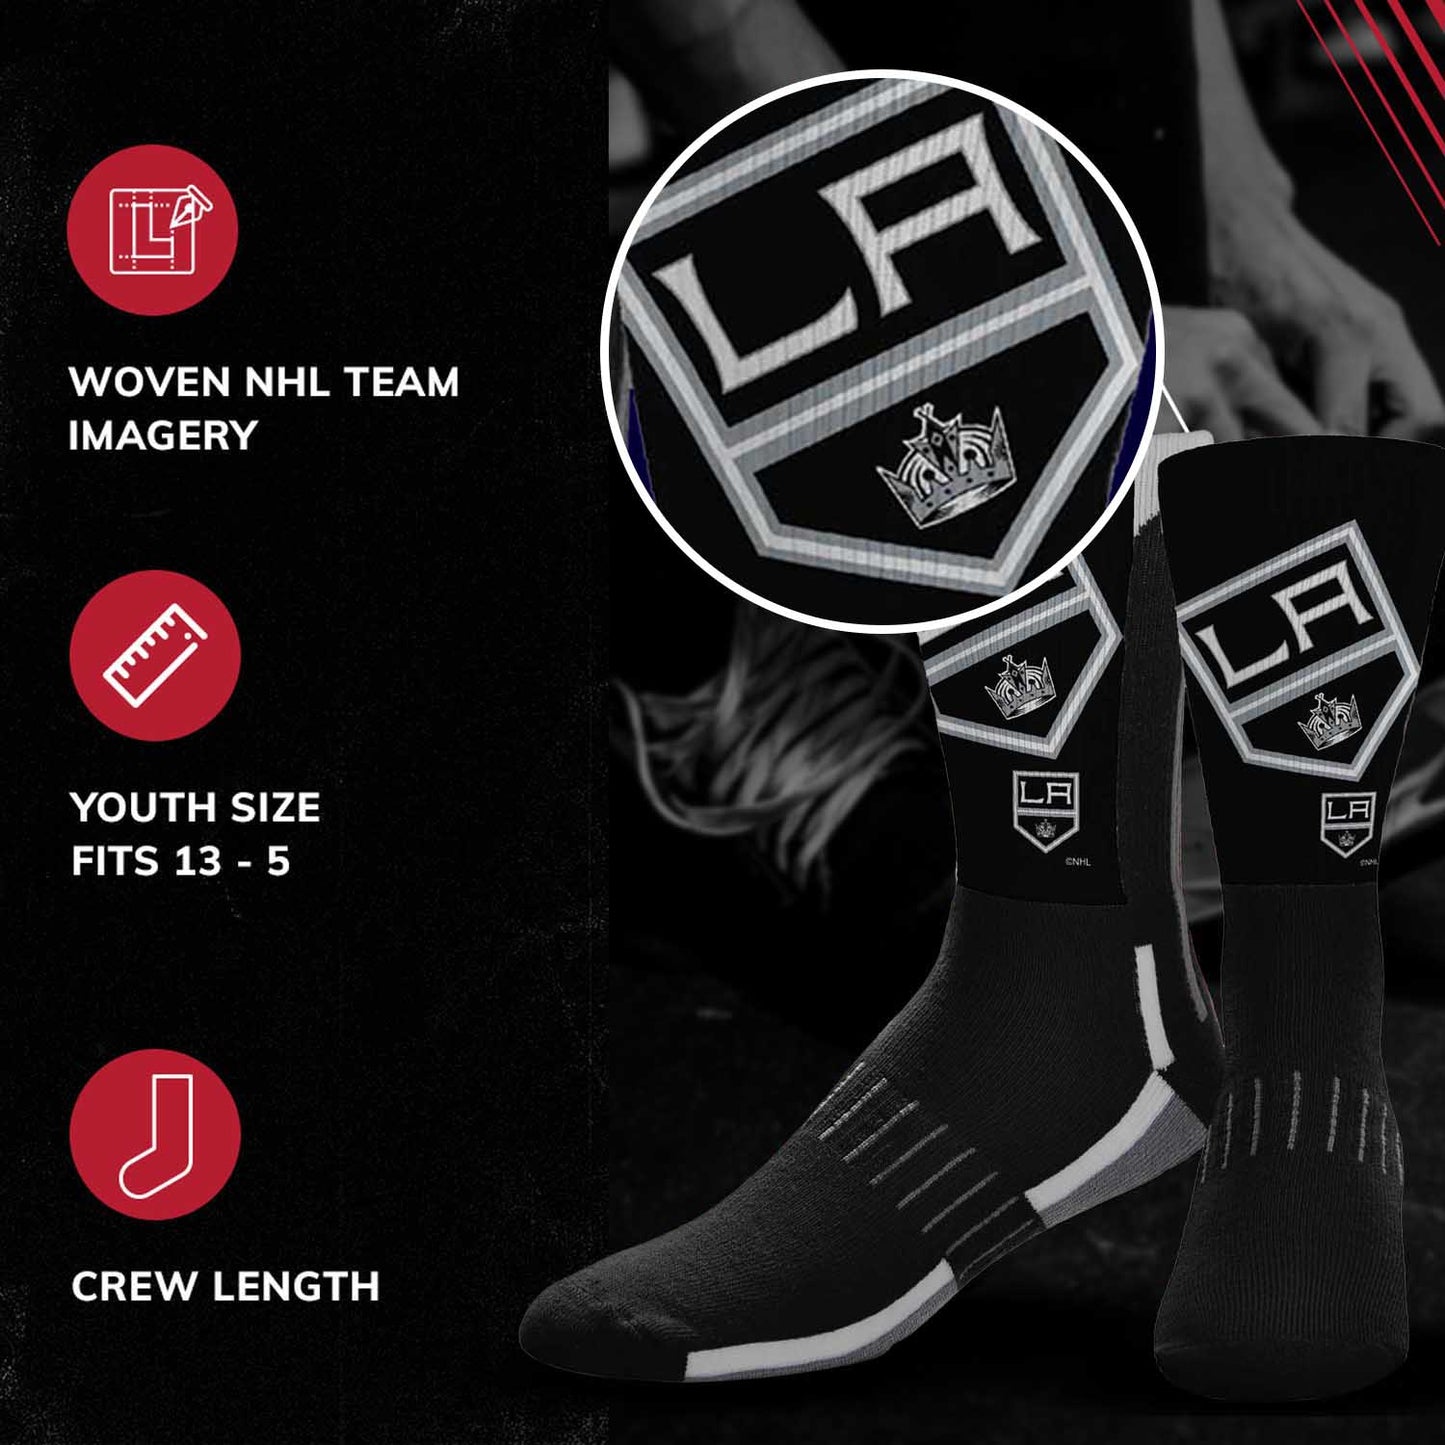 Los Angeles Kings Adult NHL Zoom Curve Team Crew Socks - Black